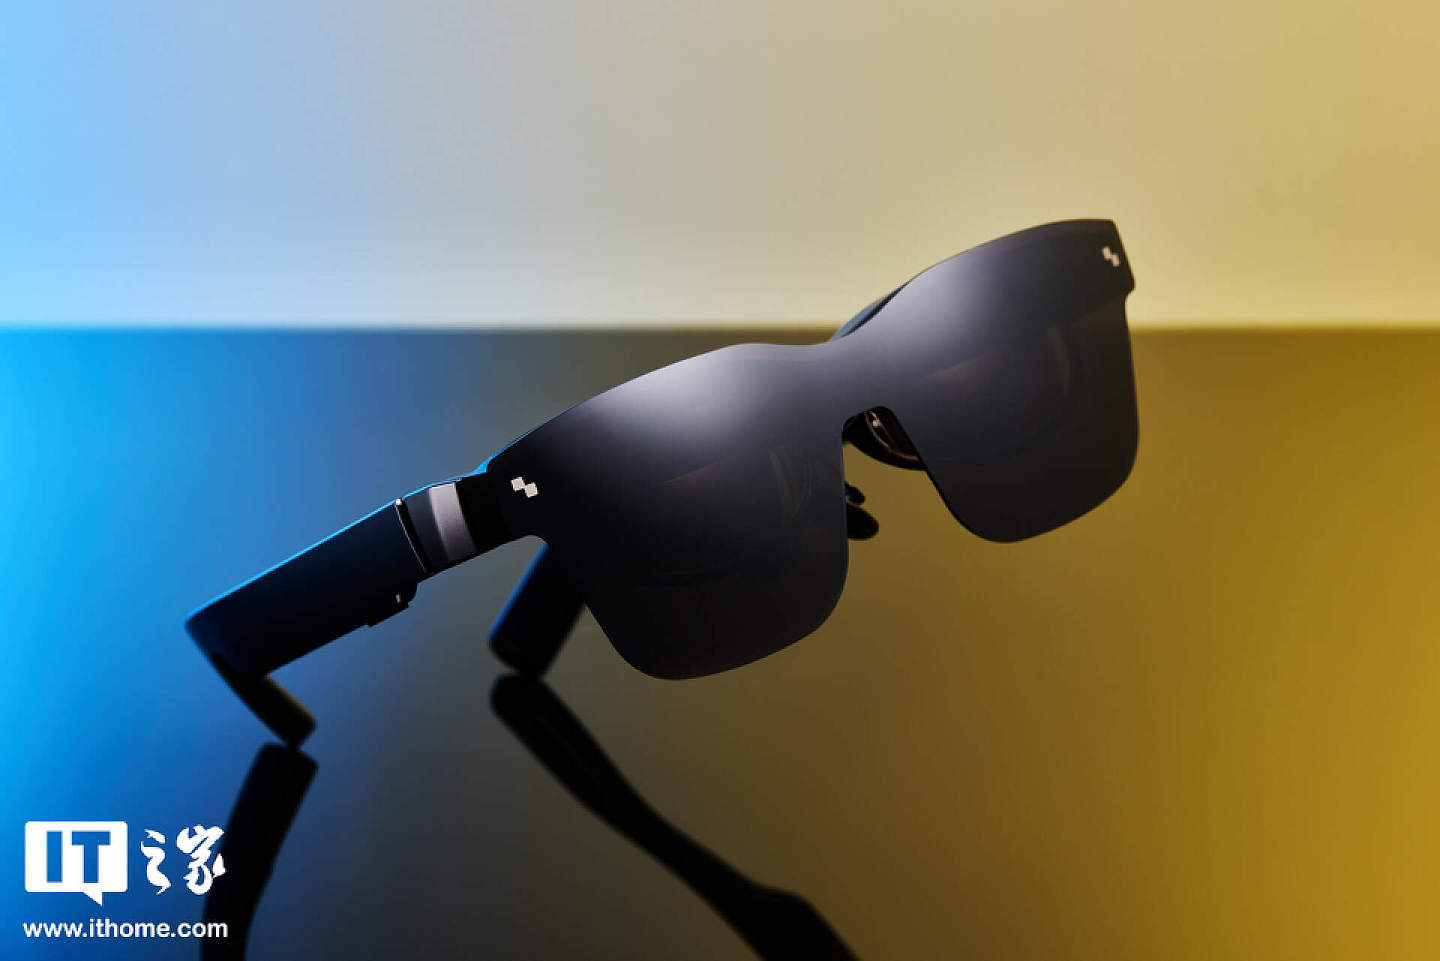 【IT之家开箱】201 英寸巨屏躺着看：雷鸟 Air 2s 智能眼镜图赏 - 2